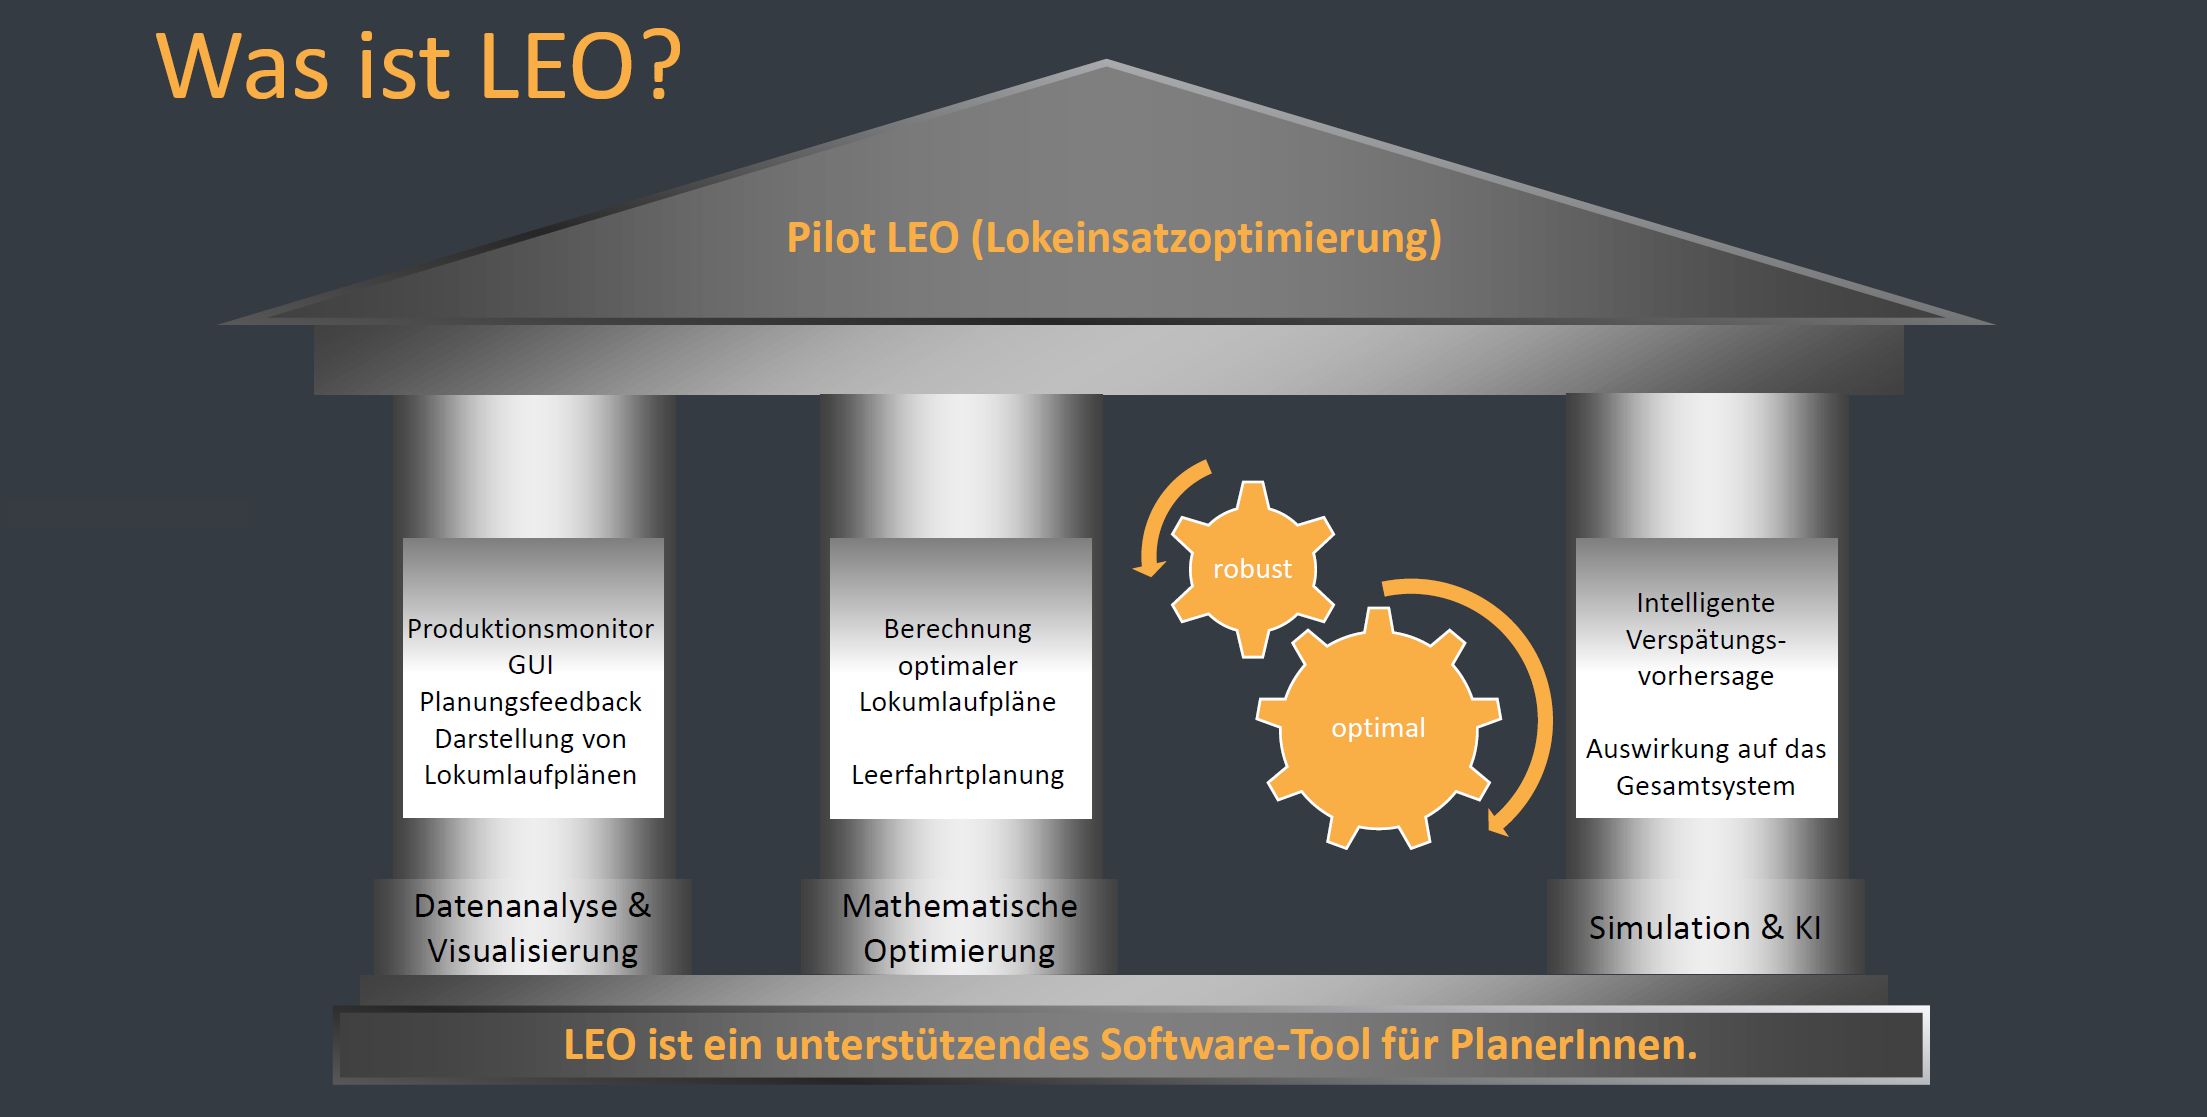 Struktur des Pilot LEO Software Tools mit den drei Säulen “Datenanalyse & Visualisierung”, “Mathematische Optimierung” und “Simulation & KI”